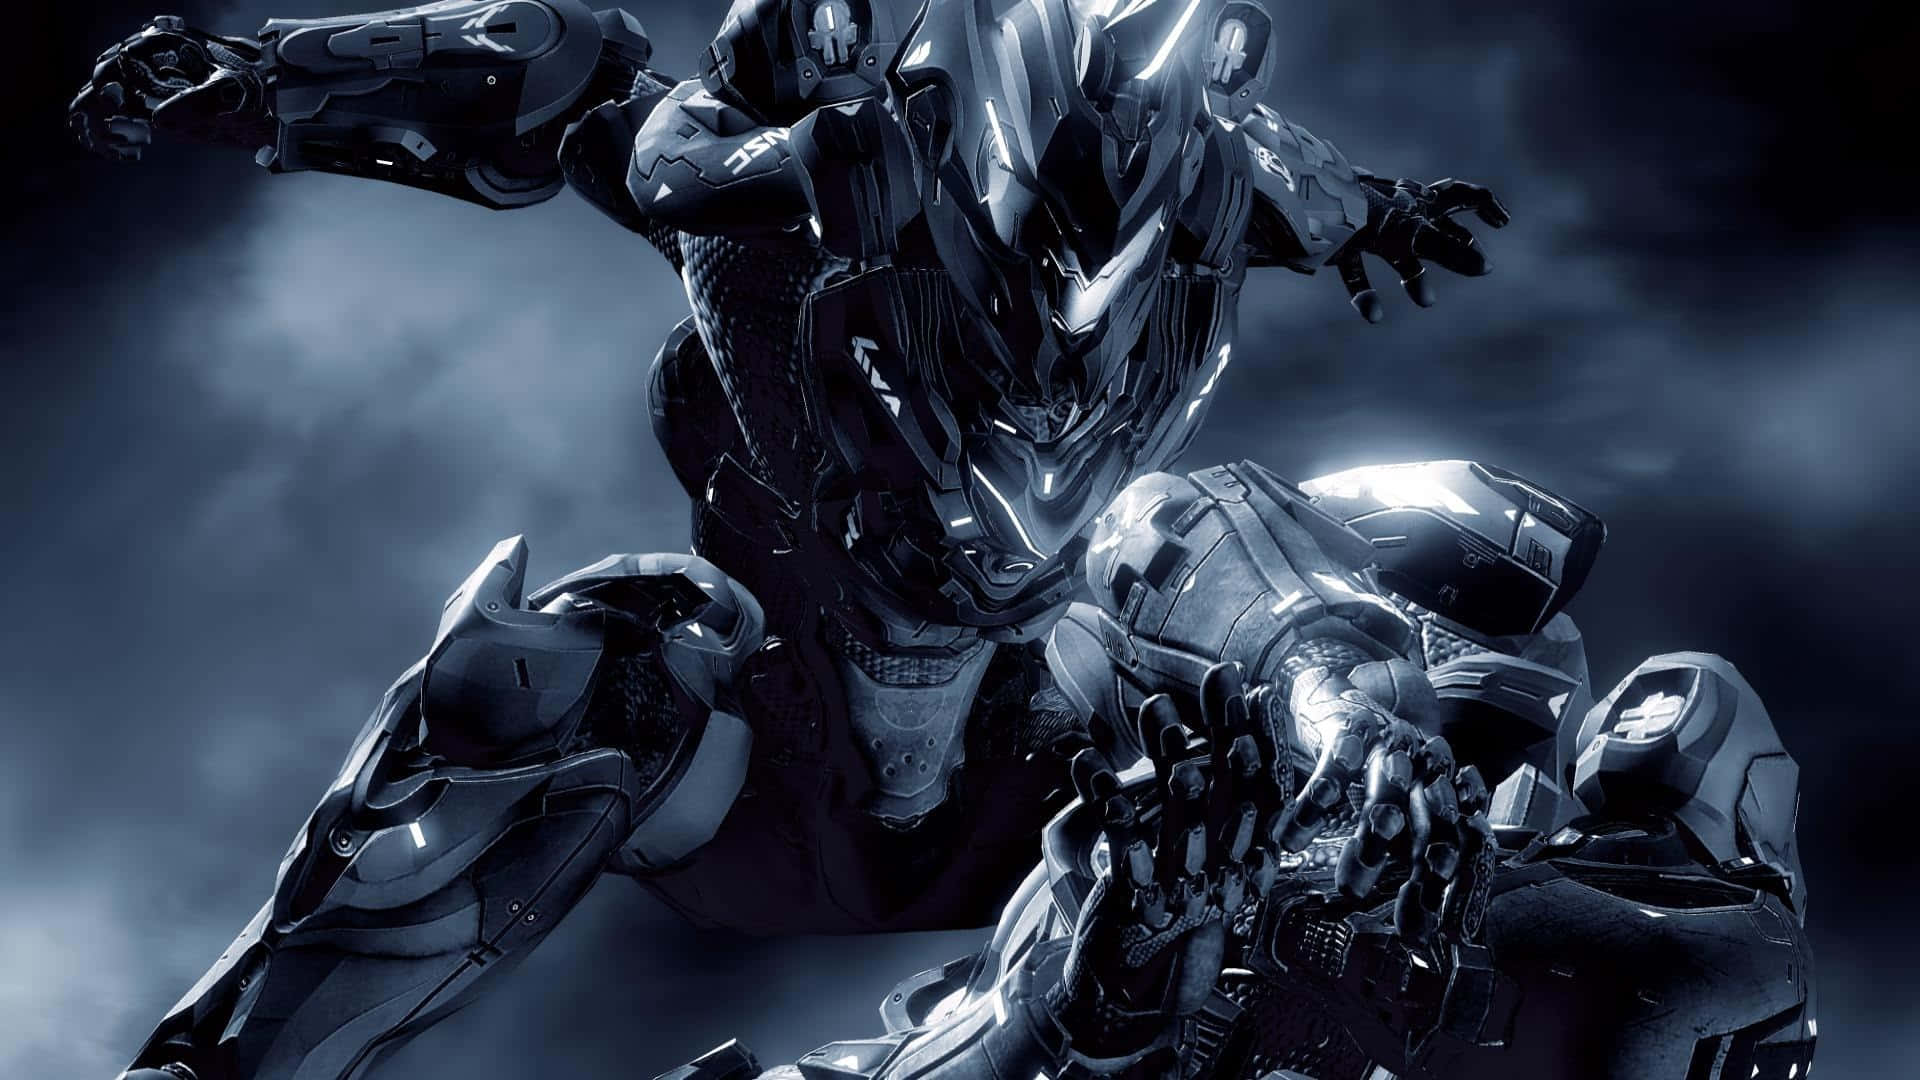 Cool Halo Battle Scene Wallpaper